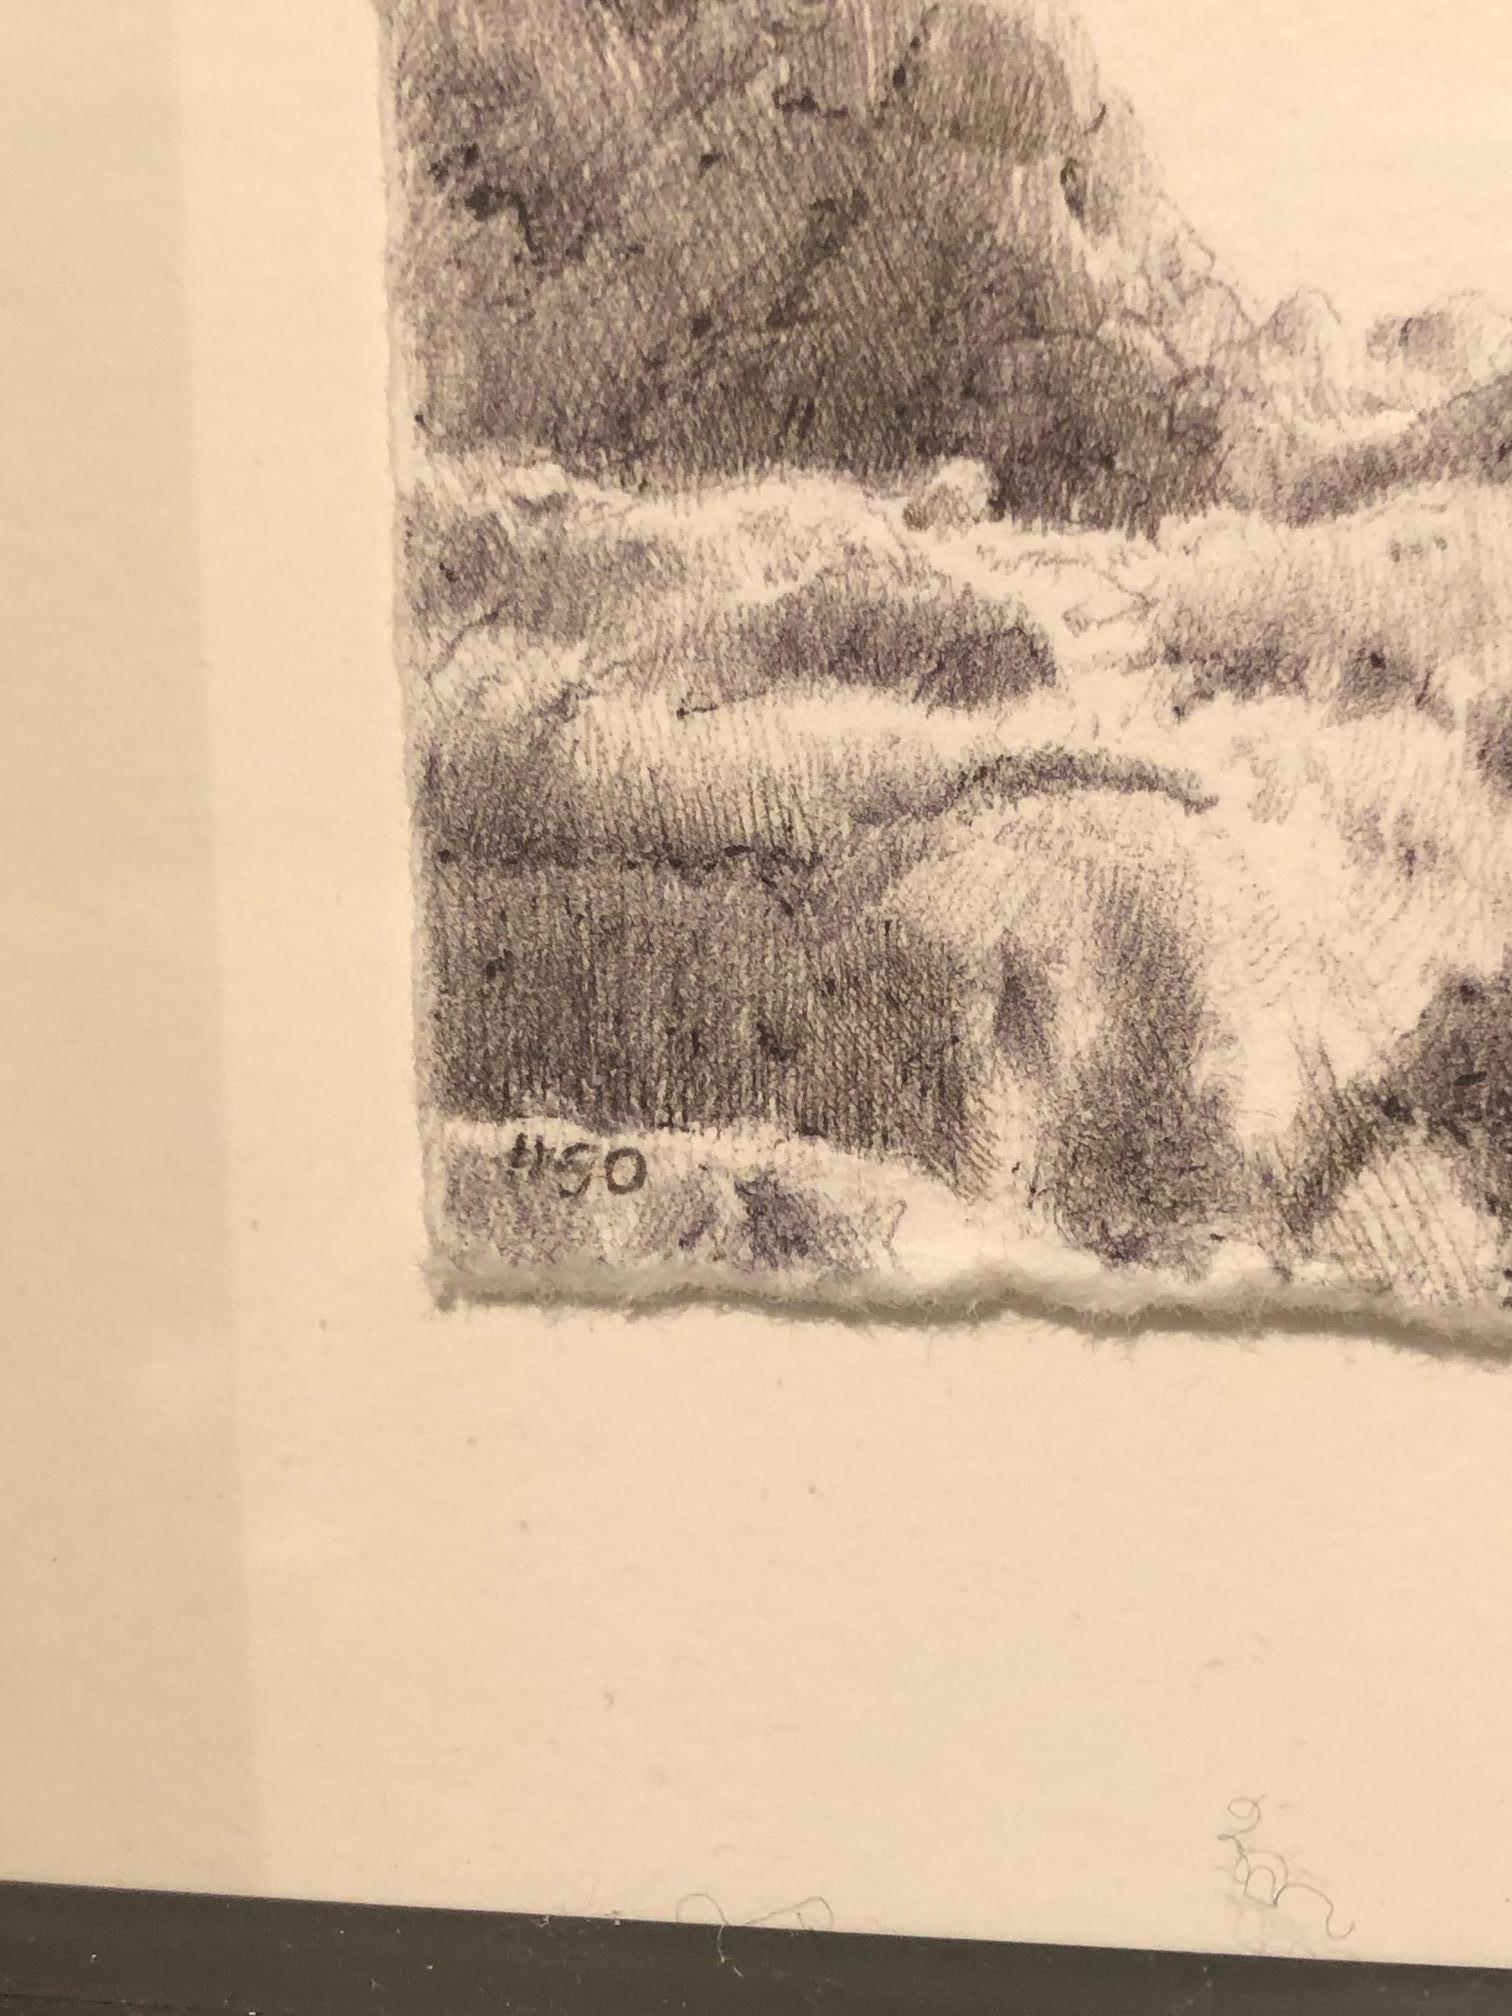 Dans Tree No. 50 , 6 janvier 2016, Dina Brodsky utilise le stylo à bille pour doter son sujet d'un sentiment presque graphique. Le contraste élevé entre l'encre noire et le papier blanc neigeux donne à l'arbre stérile une allure d'outre-monde,